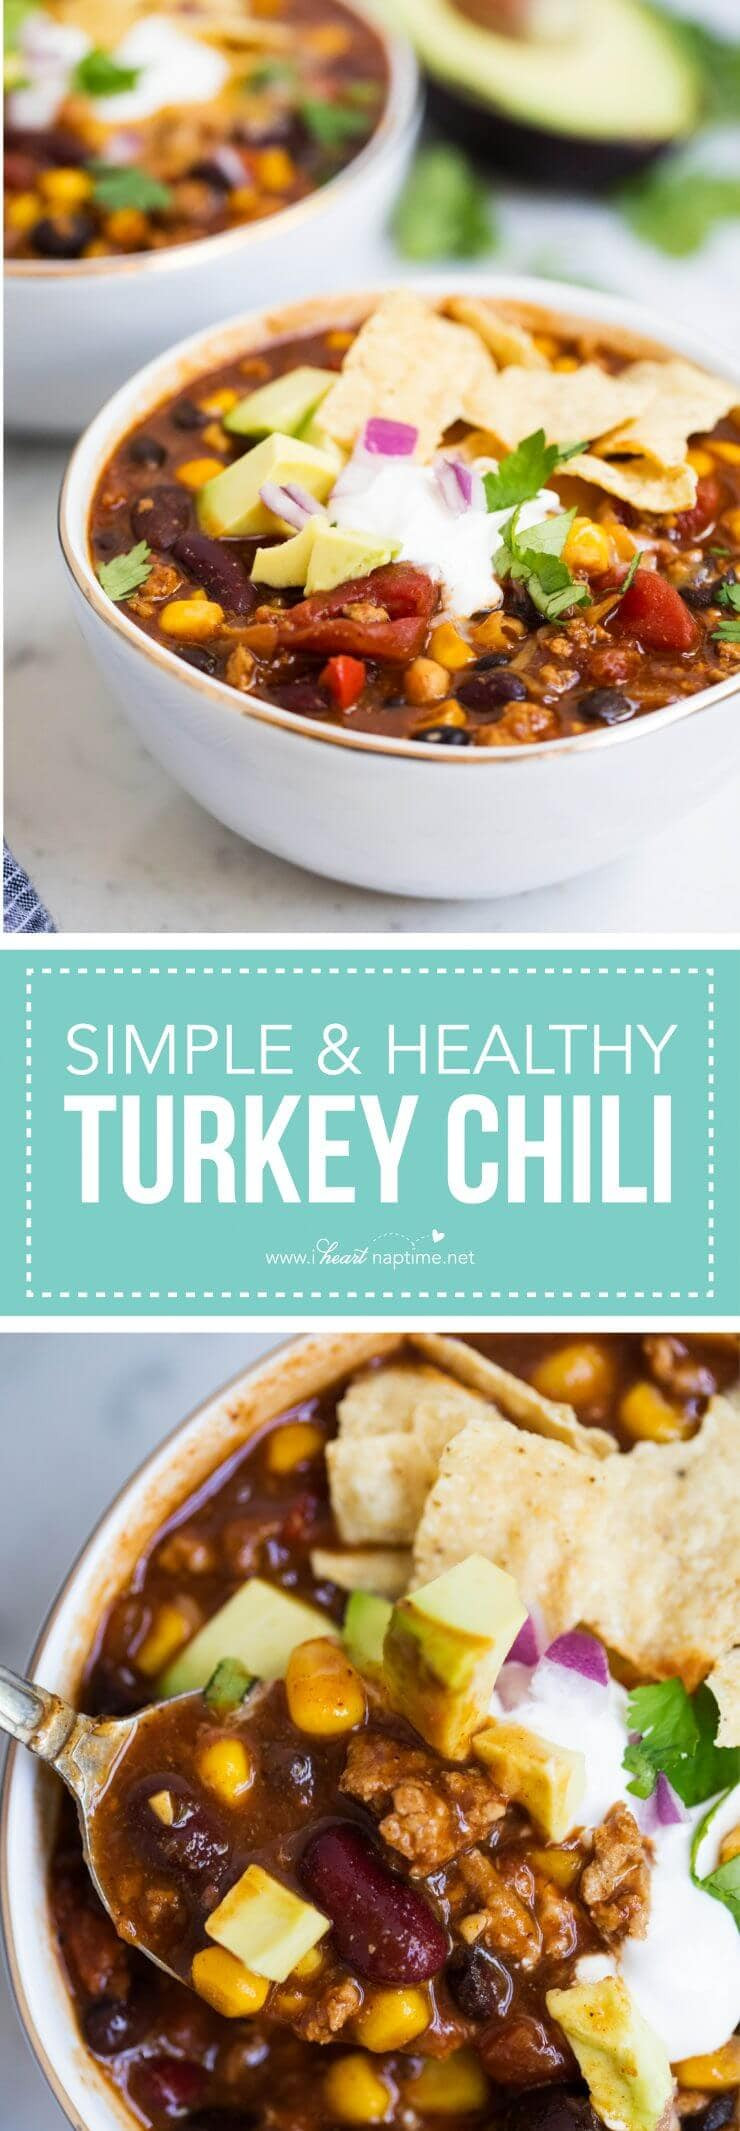 Heart Healthy Turkey Chili
 EASY and Healthy Turkey Chili Recipe I Heart Naptime